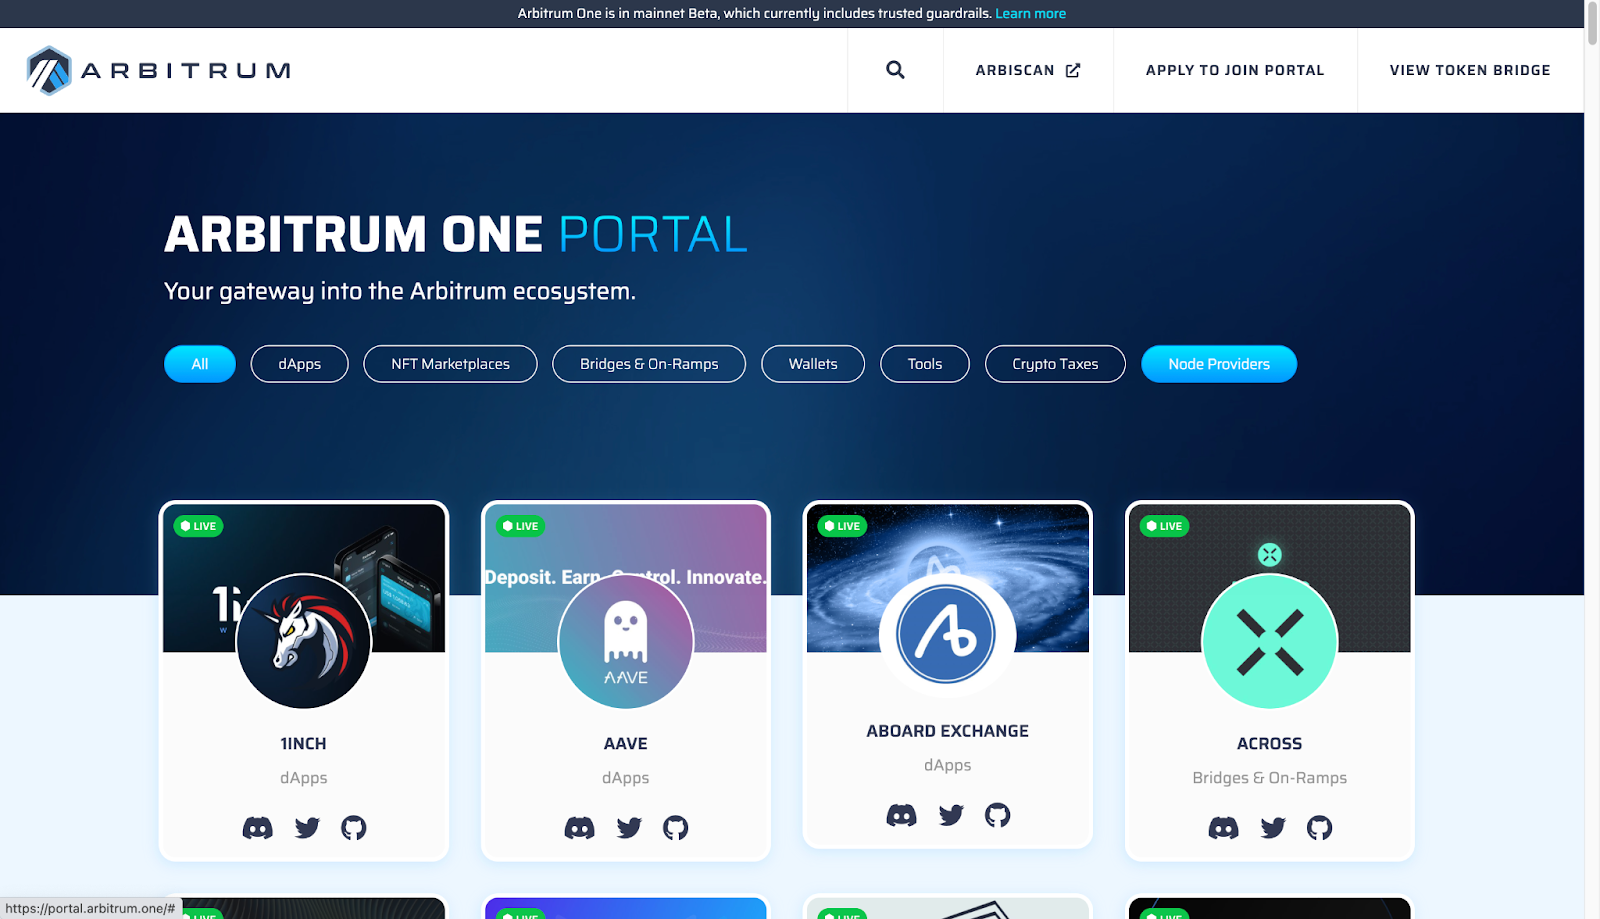 Arbitrum One portal